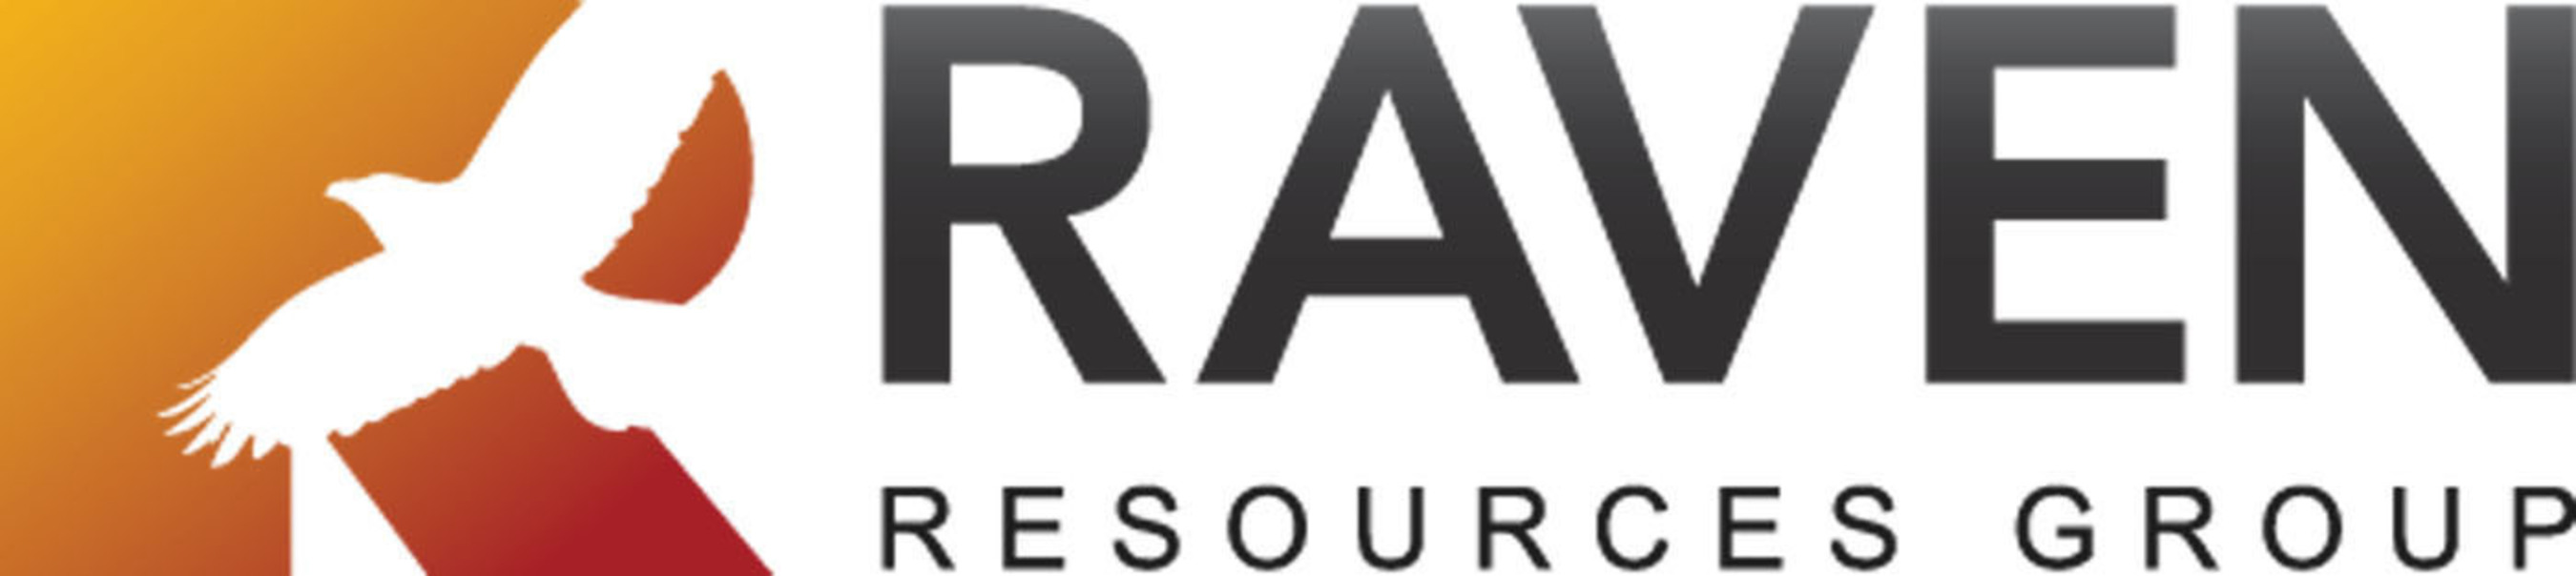 Raven Resources Group logo. (PRNewsFoto/Raven Resources Group) (PRNewsFoto/)